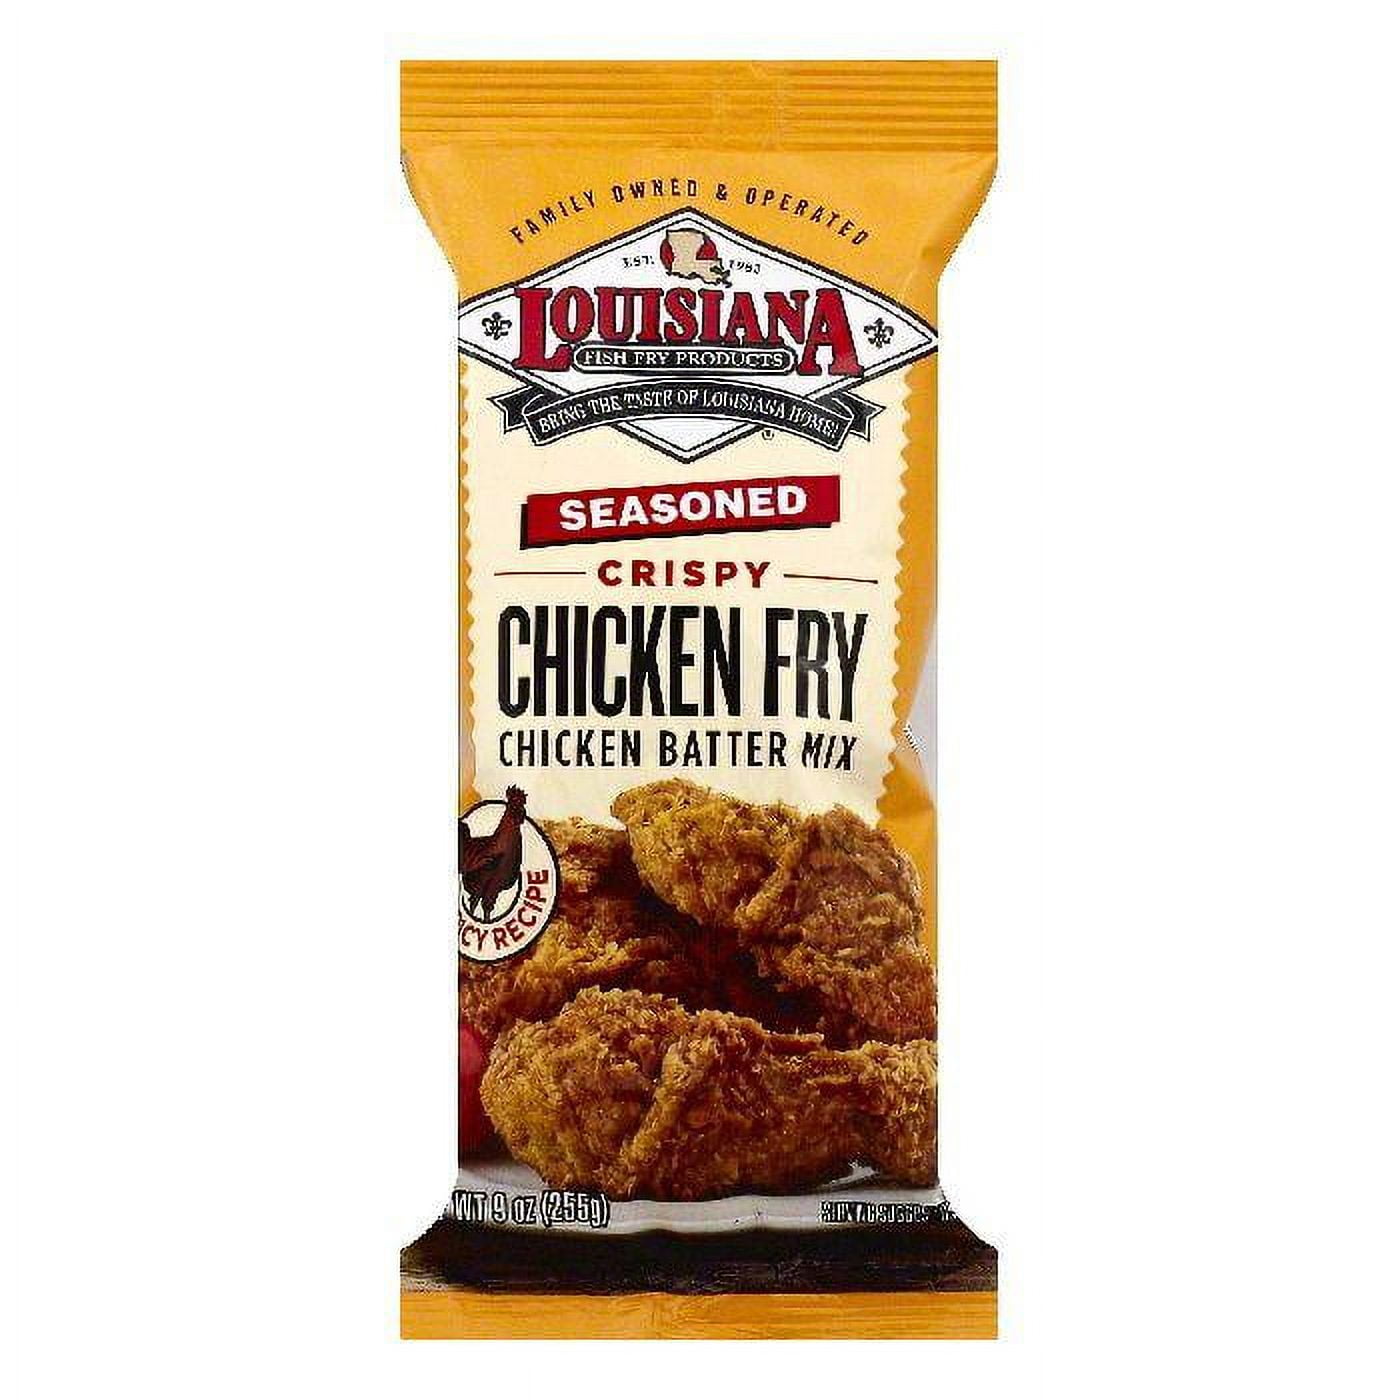 Louisiana Fish Fry Crunchy Bake Seasoned Coating Mix, Chicken - 6 oz